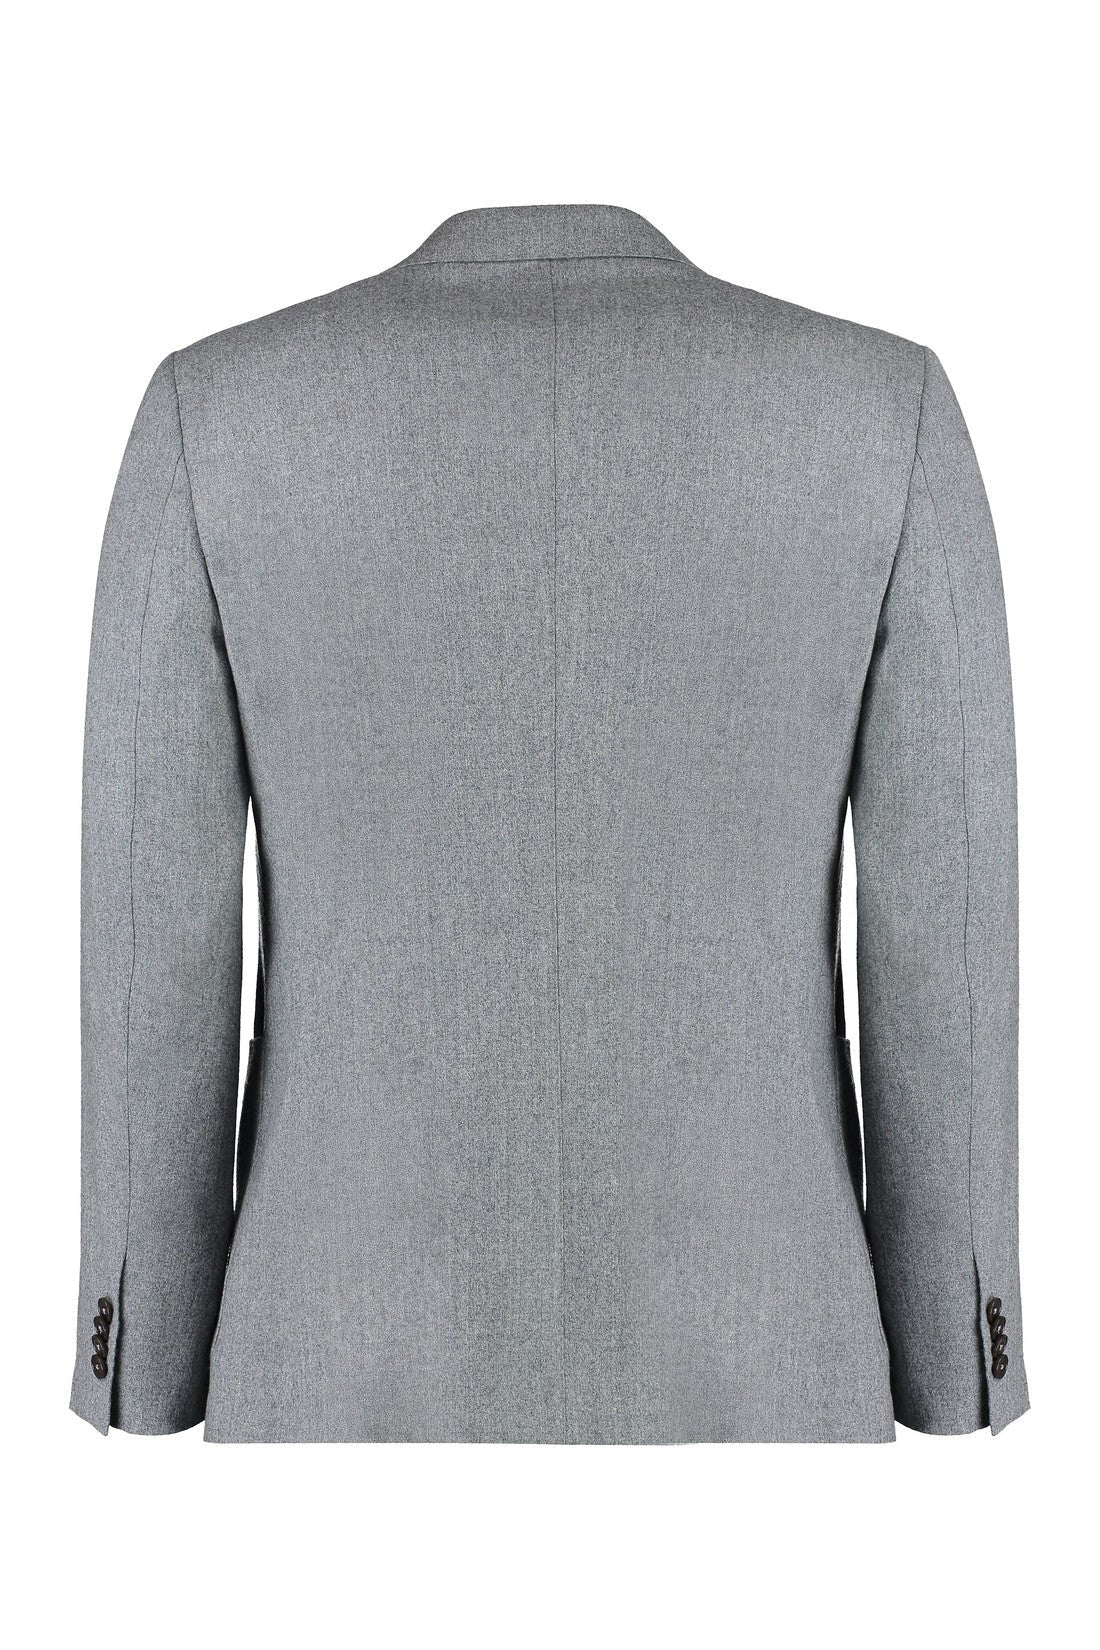 Zegna-OUTLET-SALE-Two-piece wool suit-ARCHIVIST